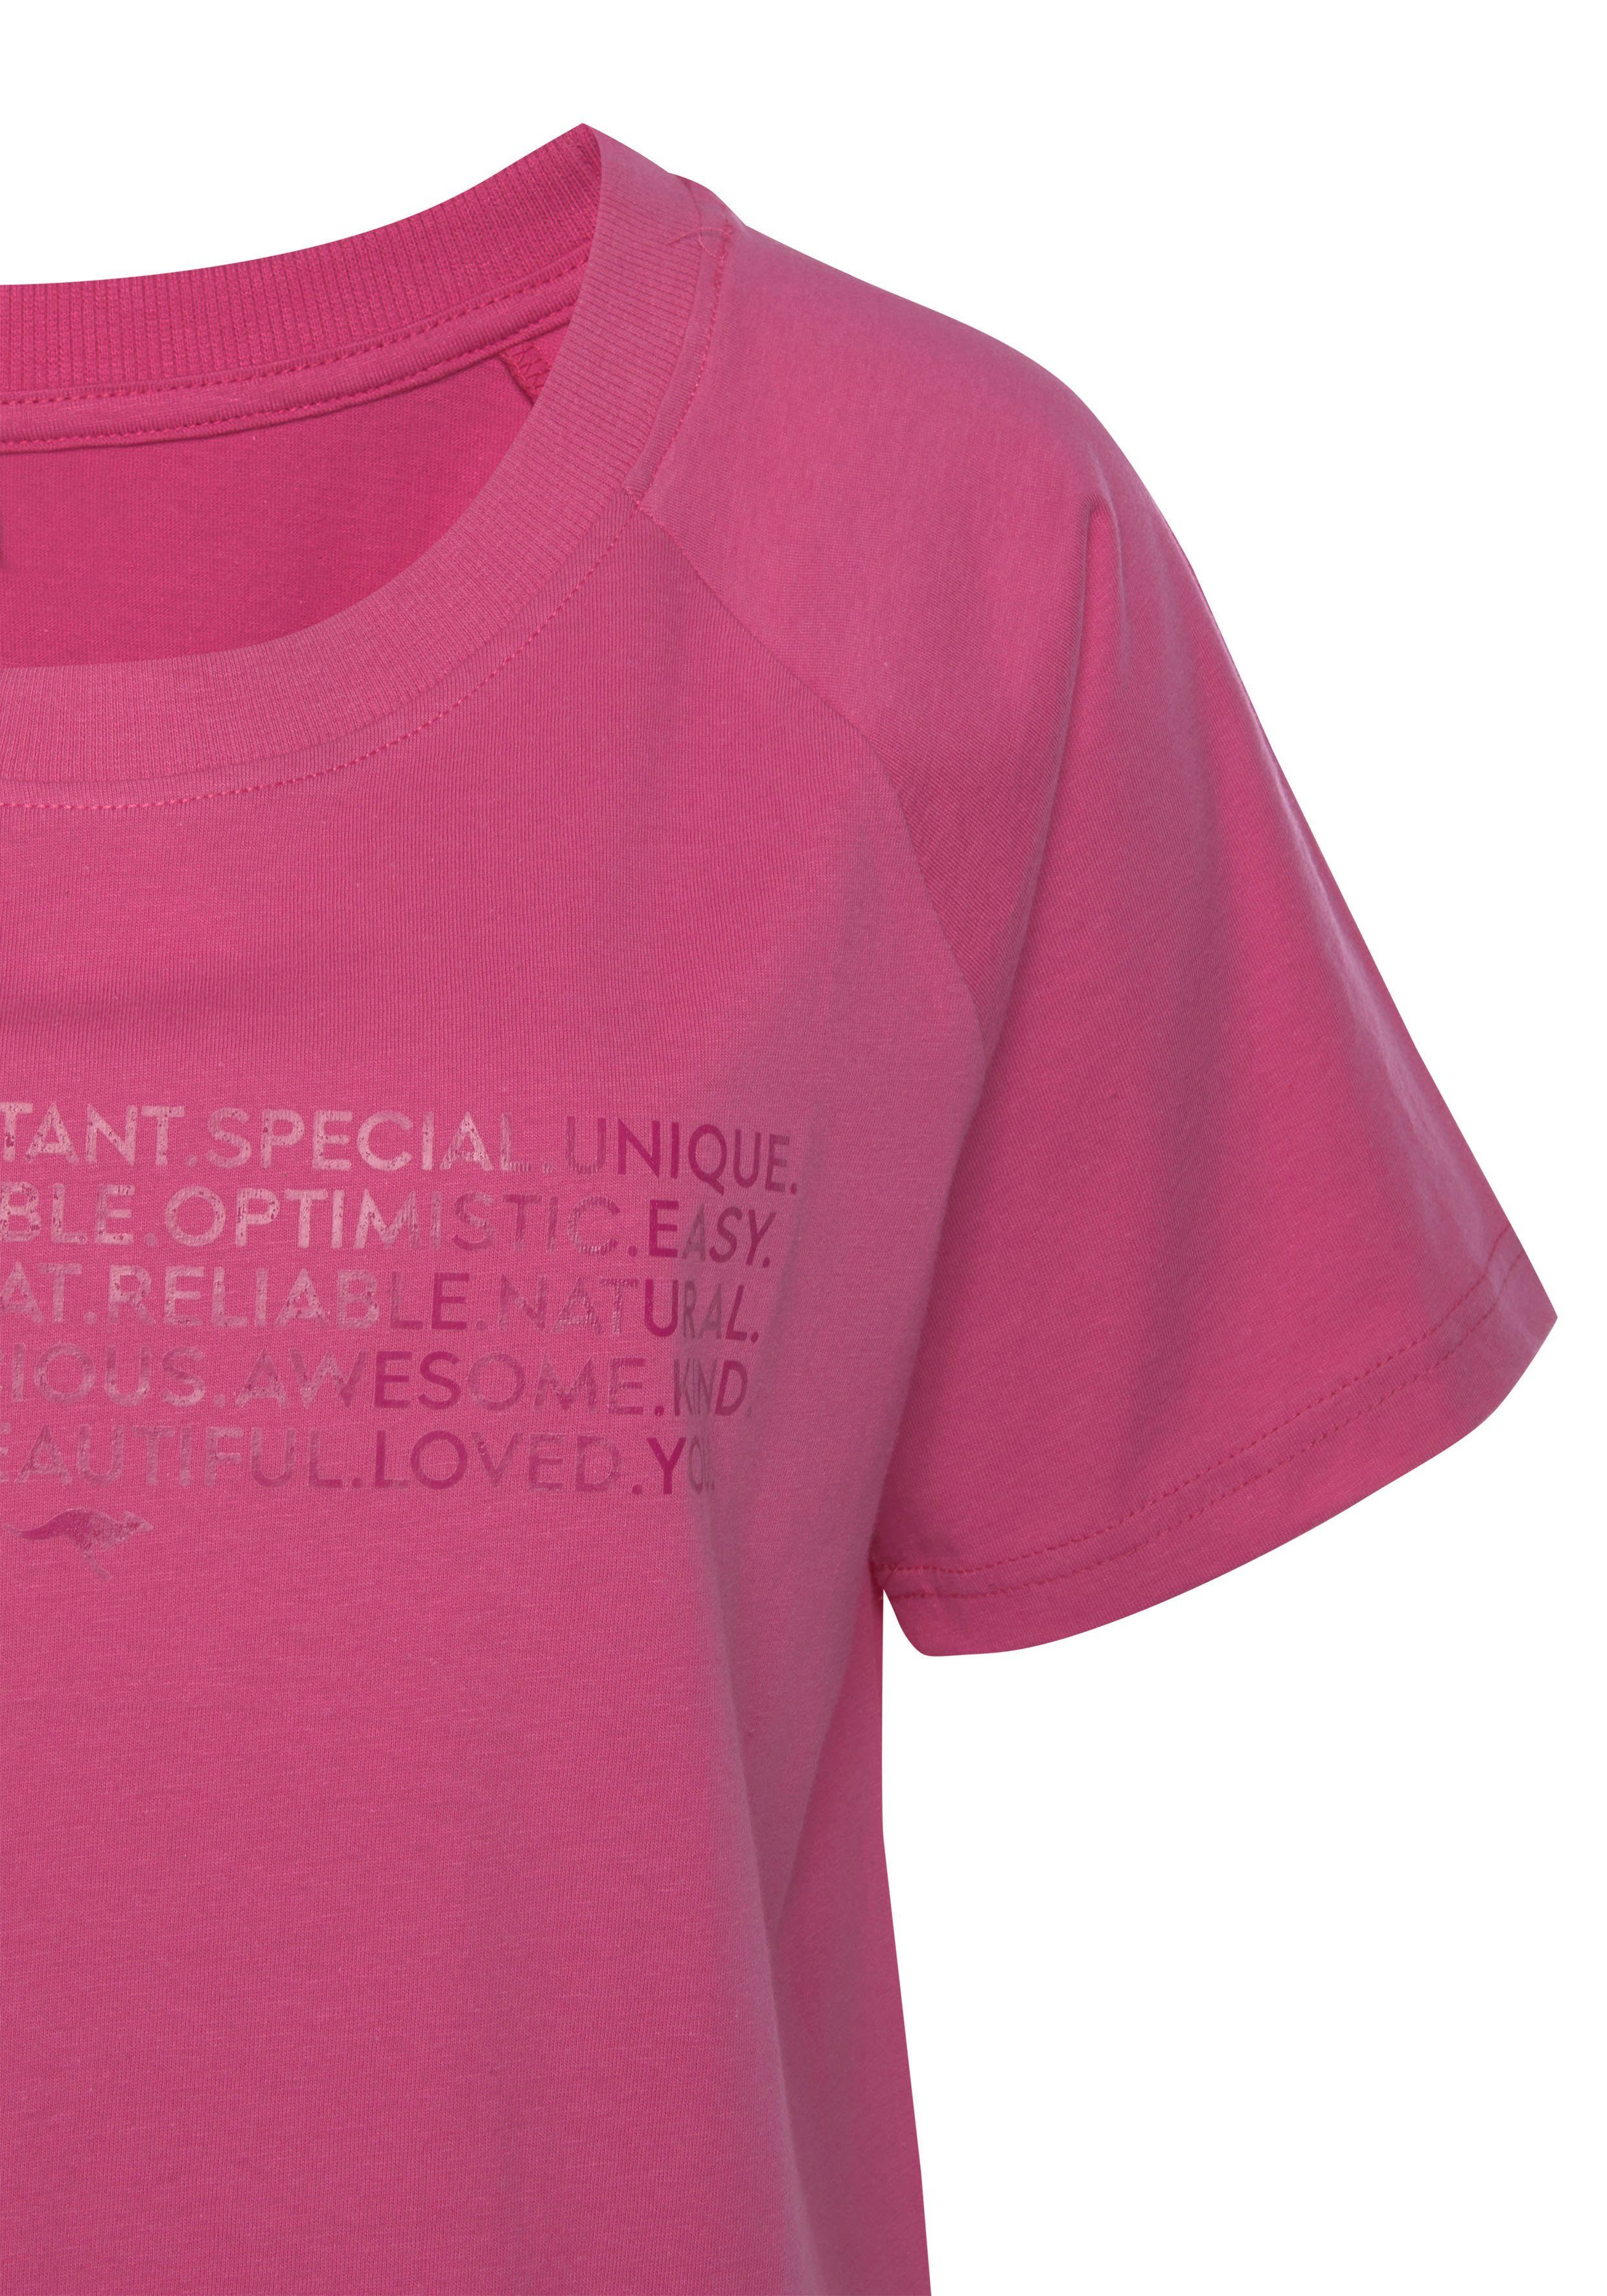 KangaROOS Bigshirt mit Slogan-Frontdruck pink